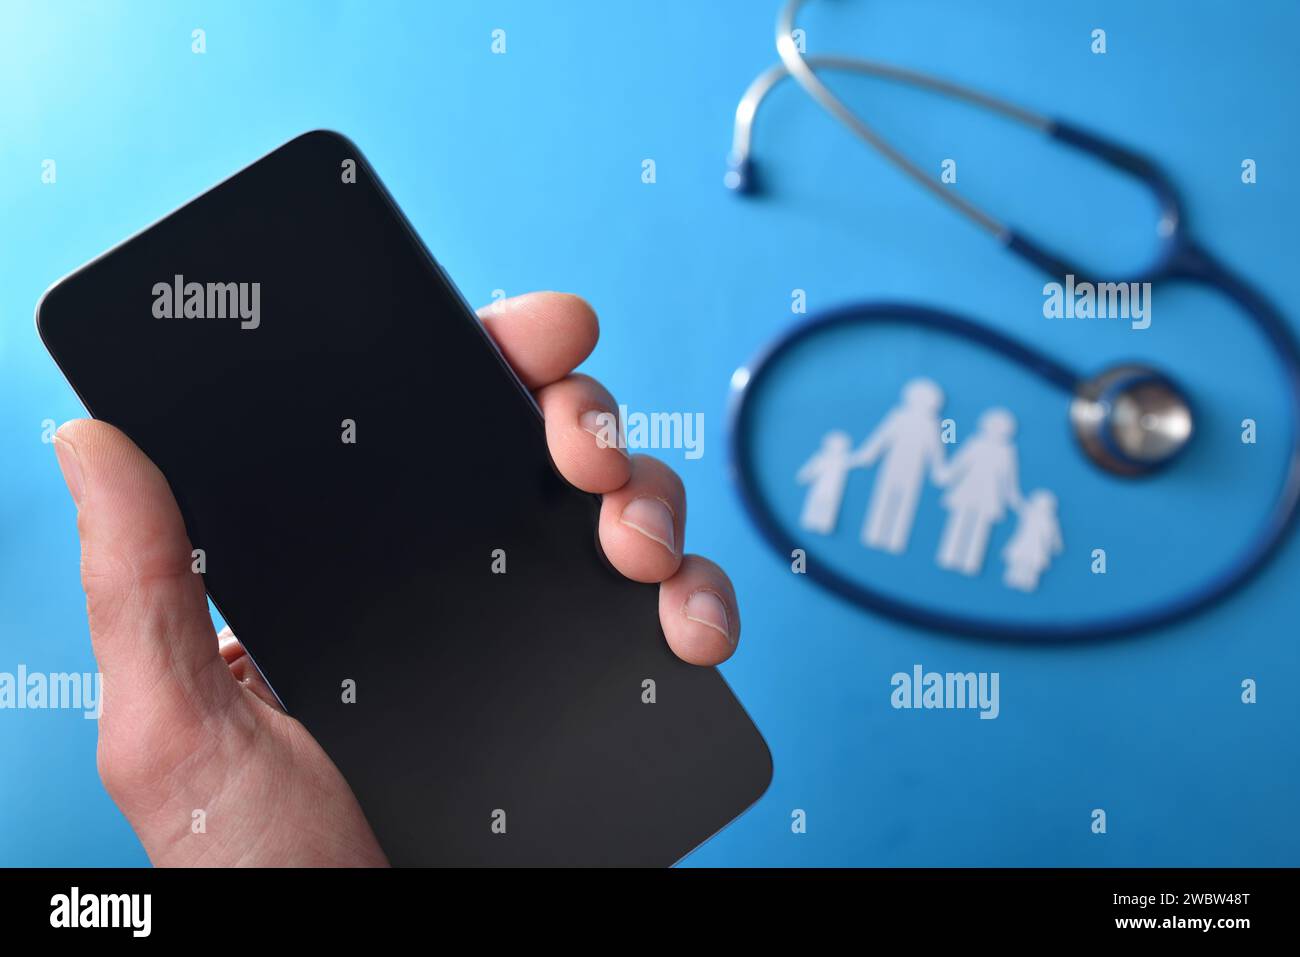 Familie Gesundheitswesen Telefon Pflege Konzept mit Hand halten ein Smartphone und Stethoskop und Ausschnitt der Familie im Hintergrund auf blauem Hintergrund. Top-Film Stockfoto